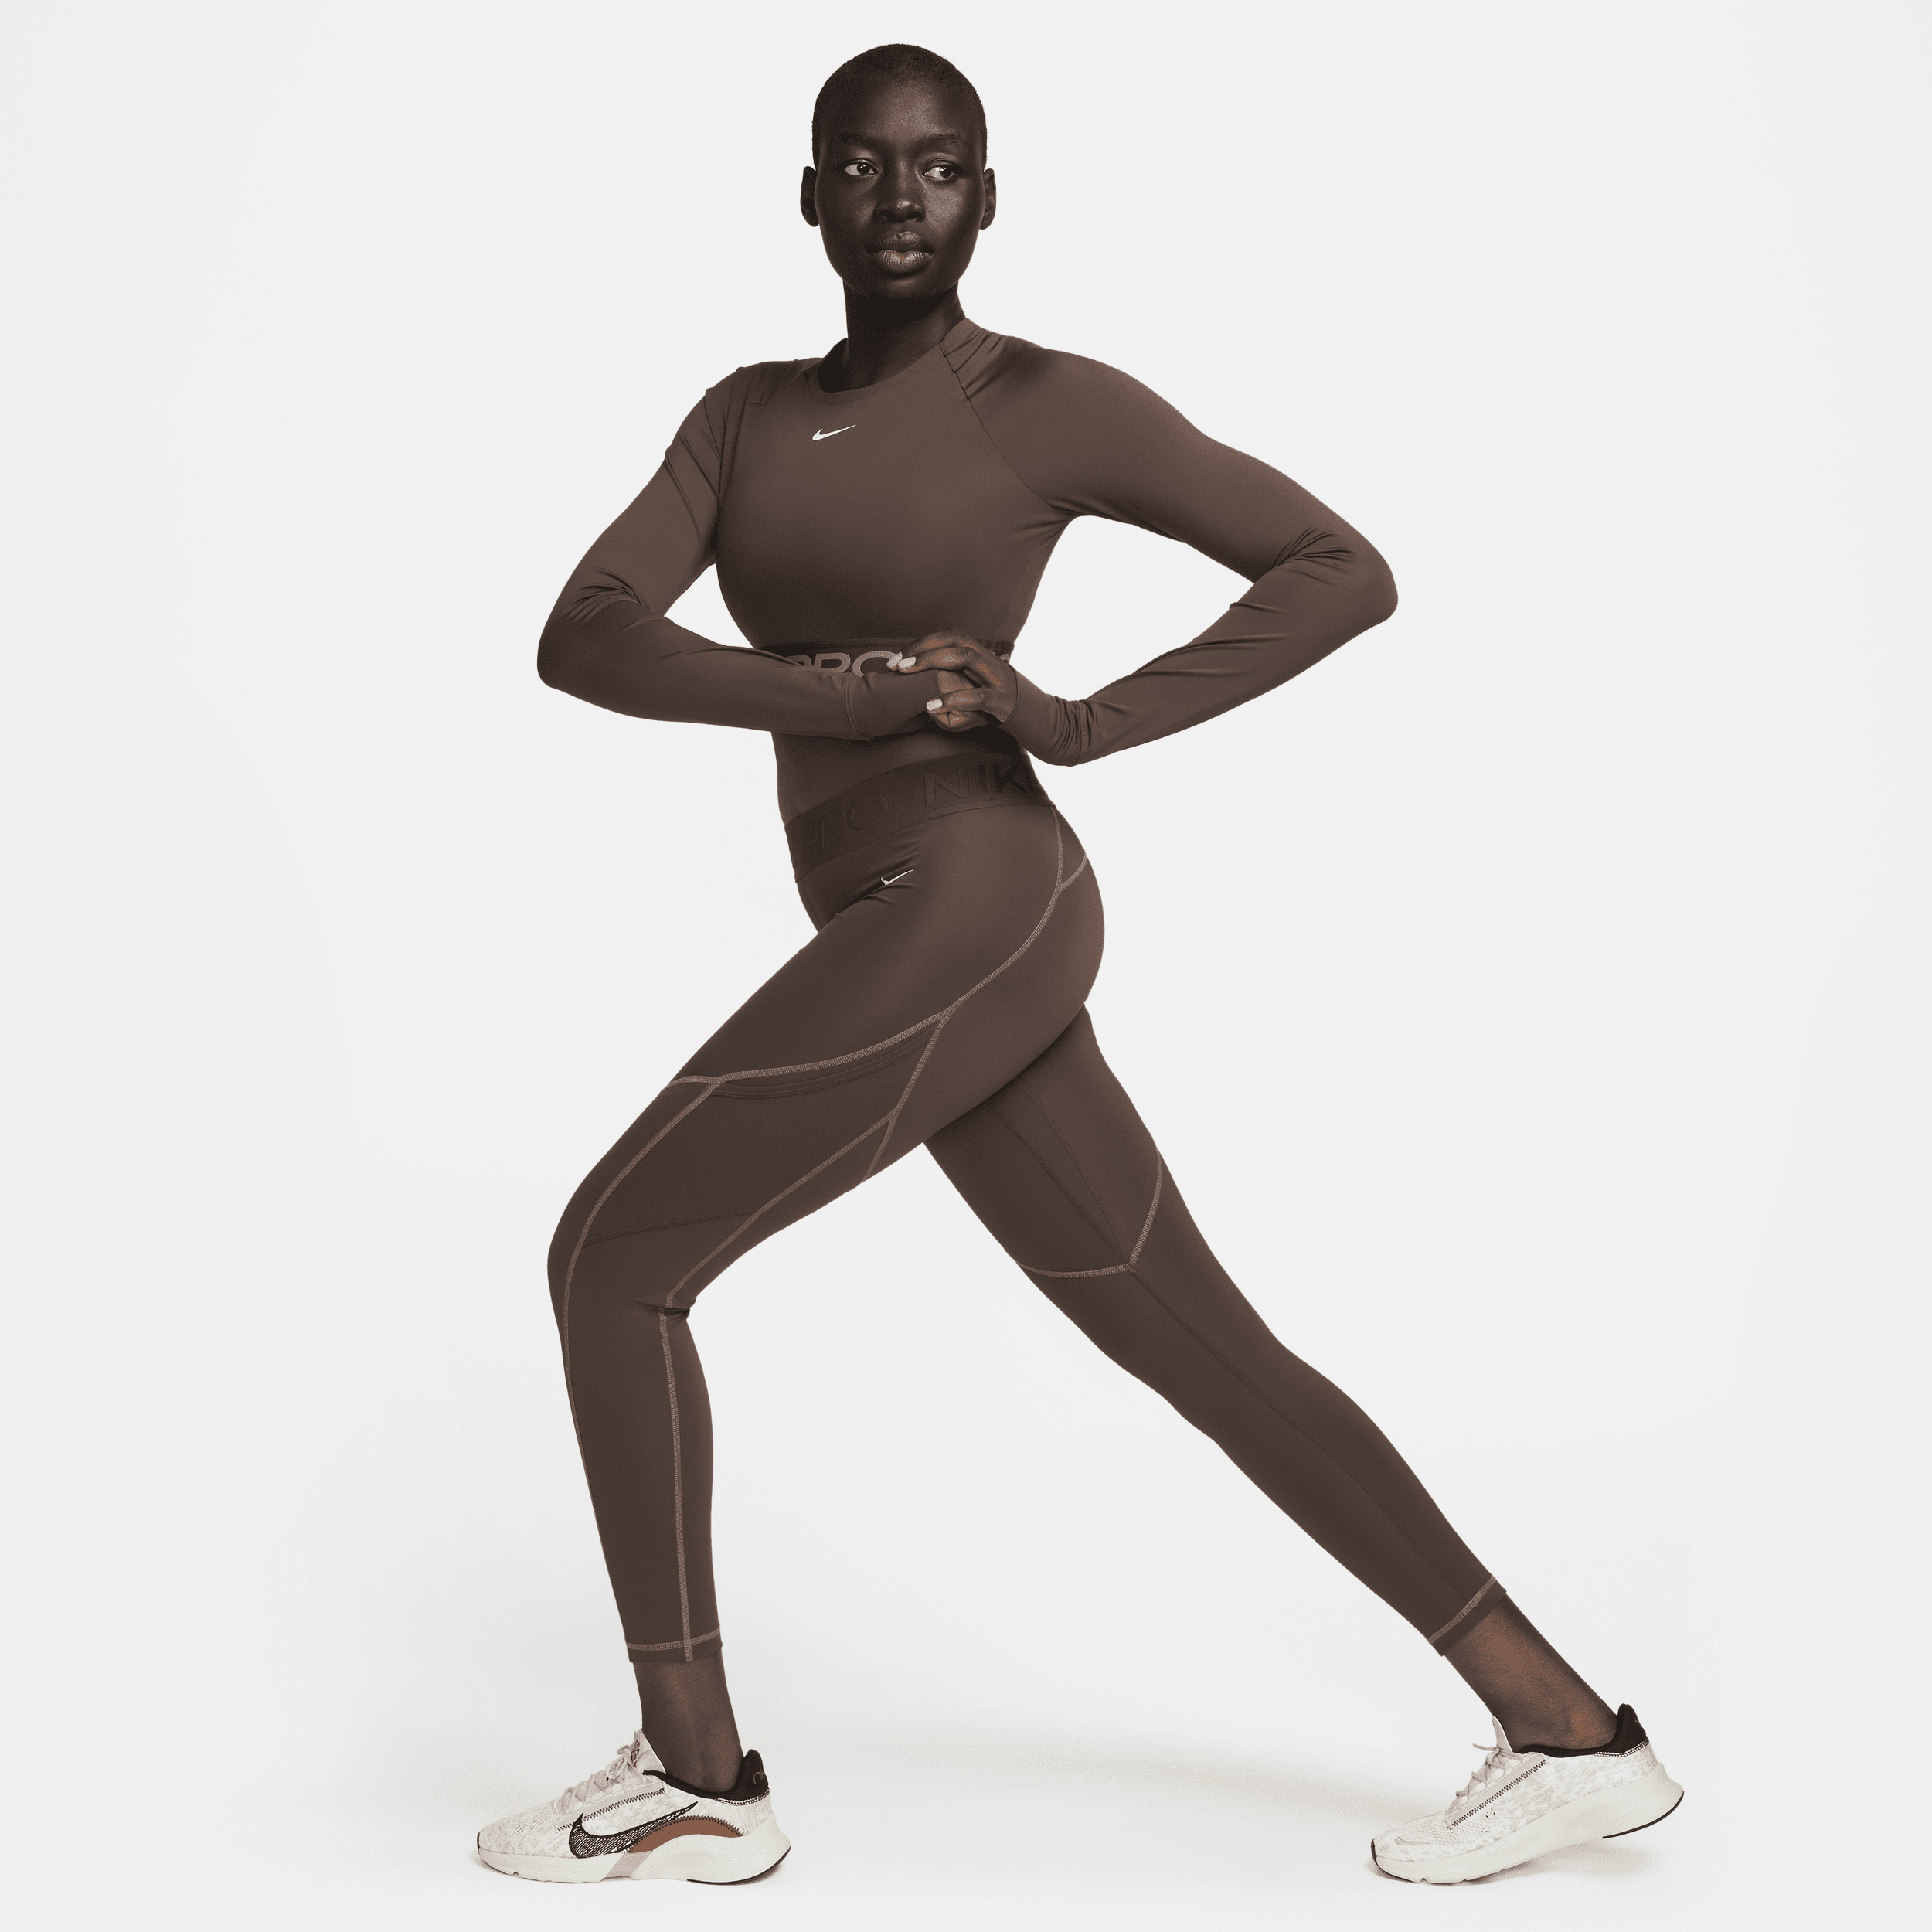 Nike Pro 7 8-legging met halfhoge taille en zakken voor dames Bruin